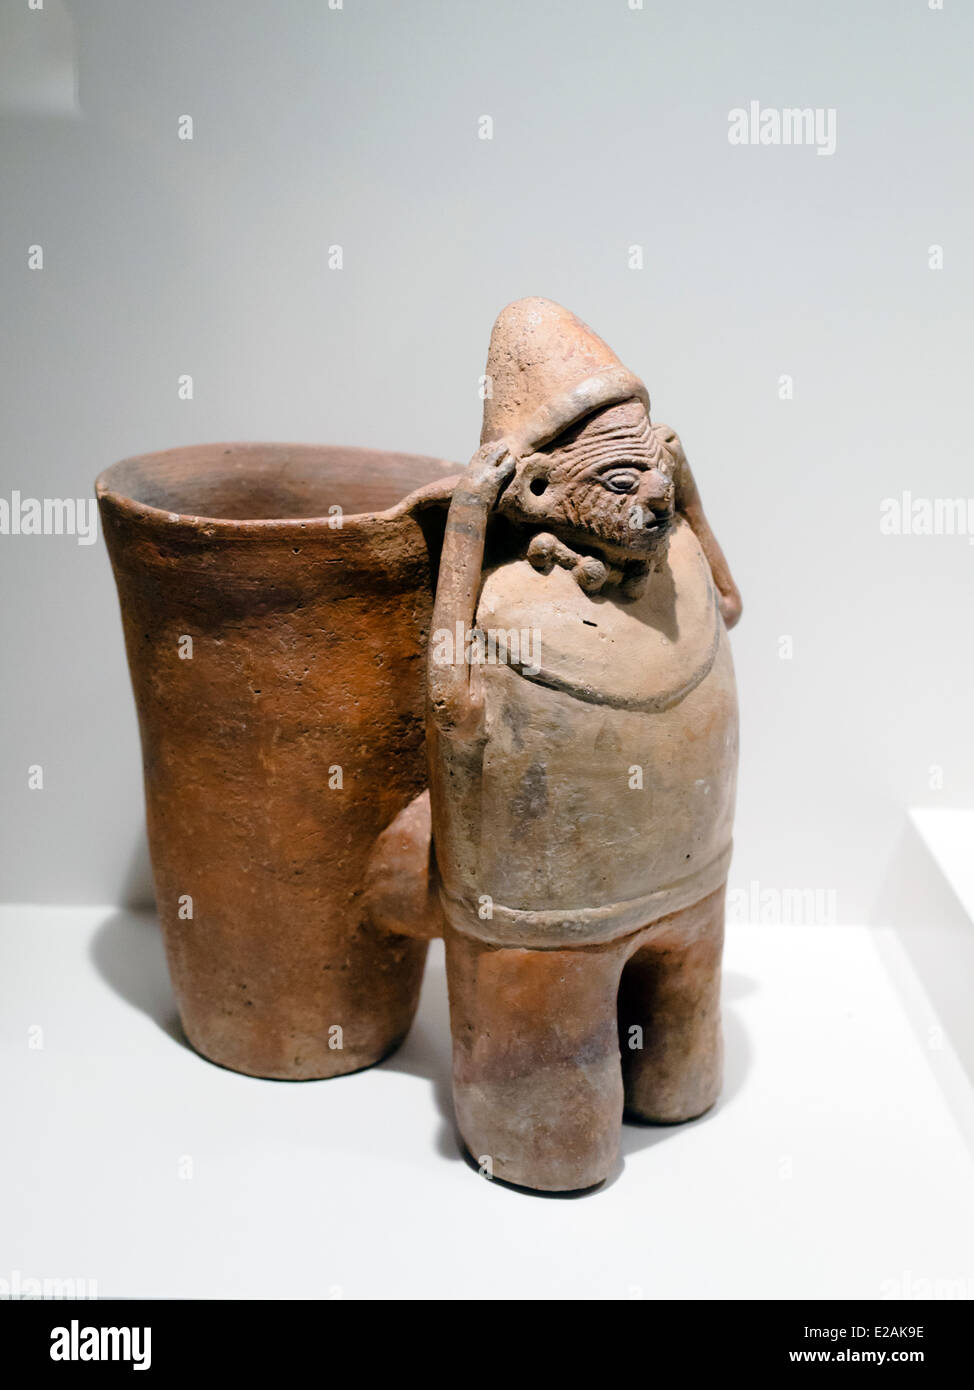 Skulpturale Vasen - menschliche Darstellung Huari Übergangszeit 800-1300 n. Chr. Museo de Arte Precolombino, Cusco - Peru mit kleinen, fast unmerklich Detail, der Huari Künstler hat dieses Schiff gefertigt; Dabei kann man eine beginnende und sorgfältige bildhauerische Tätigkeit beobachten, die traditionell als solche eine sekundäre Ausdruck in der keramischen Kunst der südlichen Kulturen der präkolumbianischen Peru, war deren Exzellenz durch ihre polychrome Bemalung, verlassen den nördlichen Gruppen - vor allem der Mochica - Genie in der Skulptur Ausmaße bestimmt war. Stockfoto